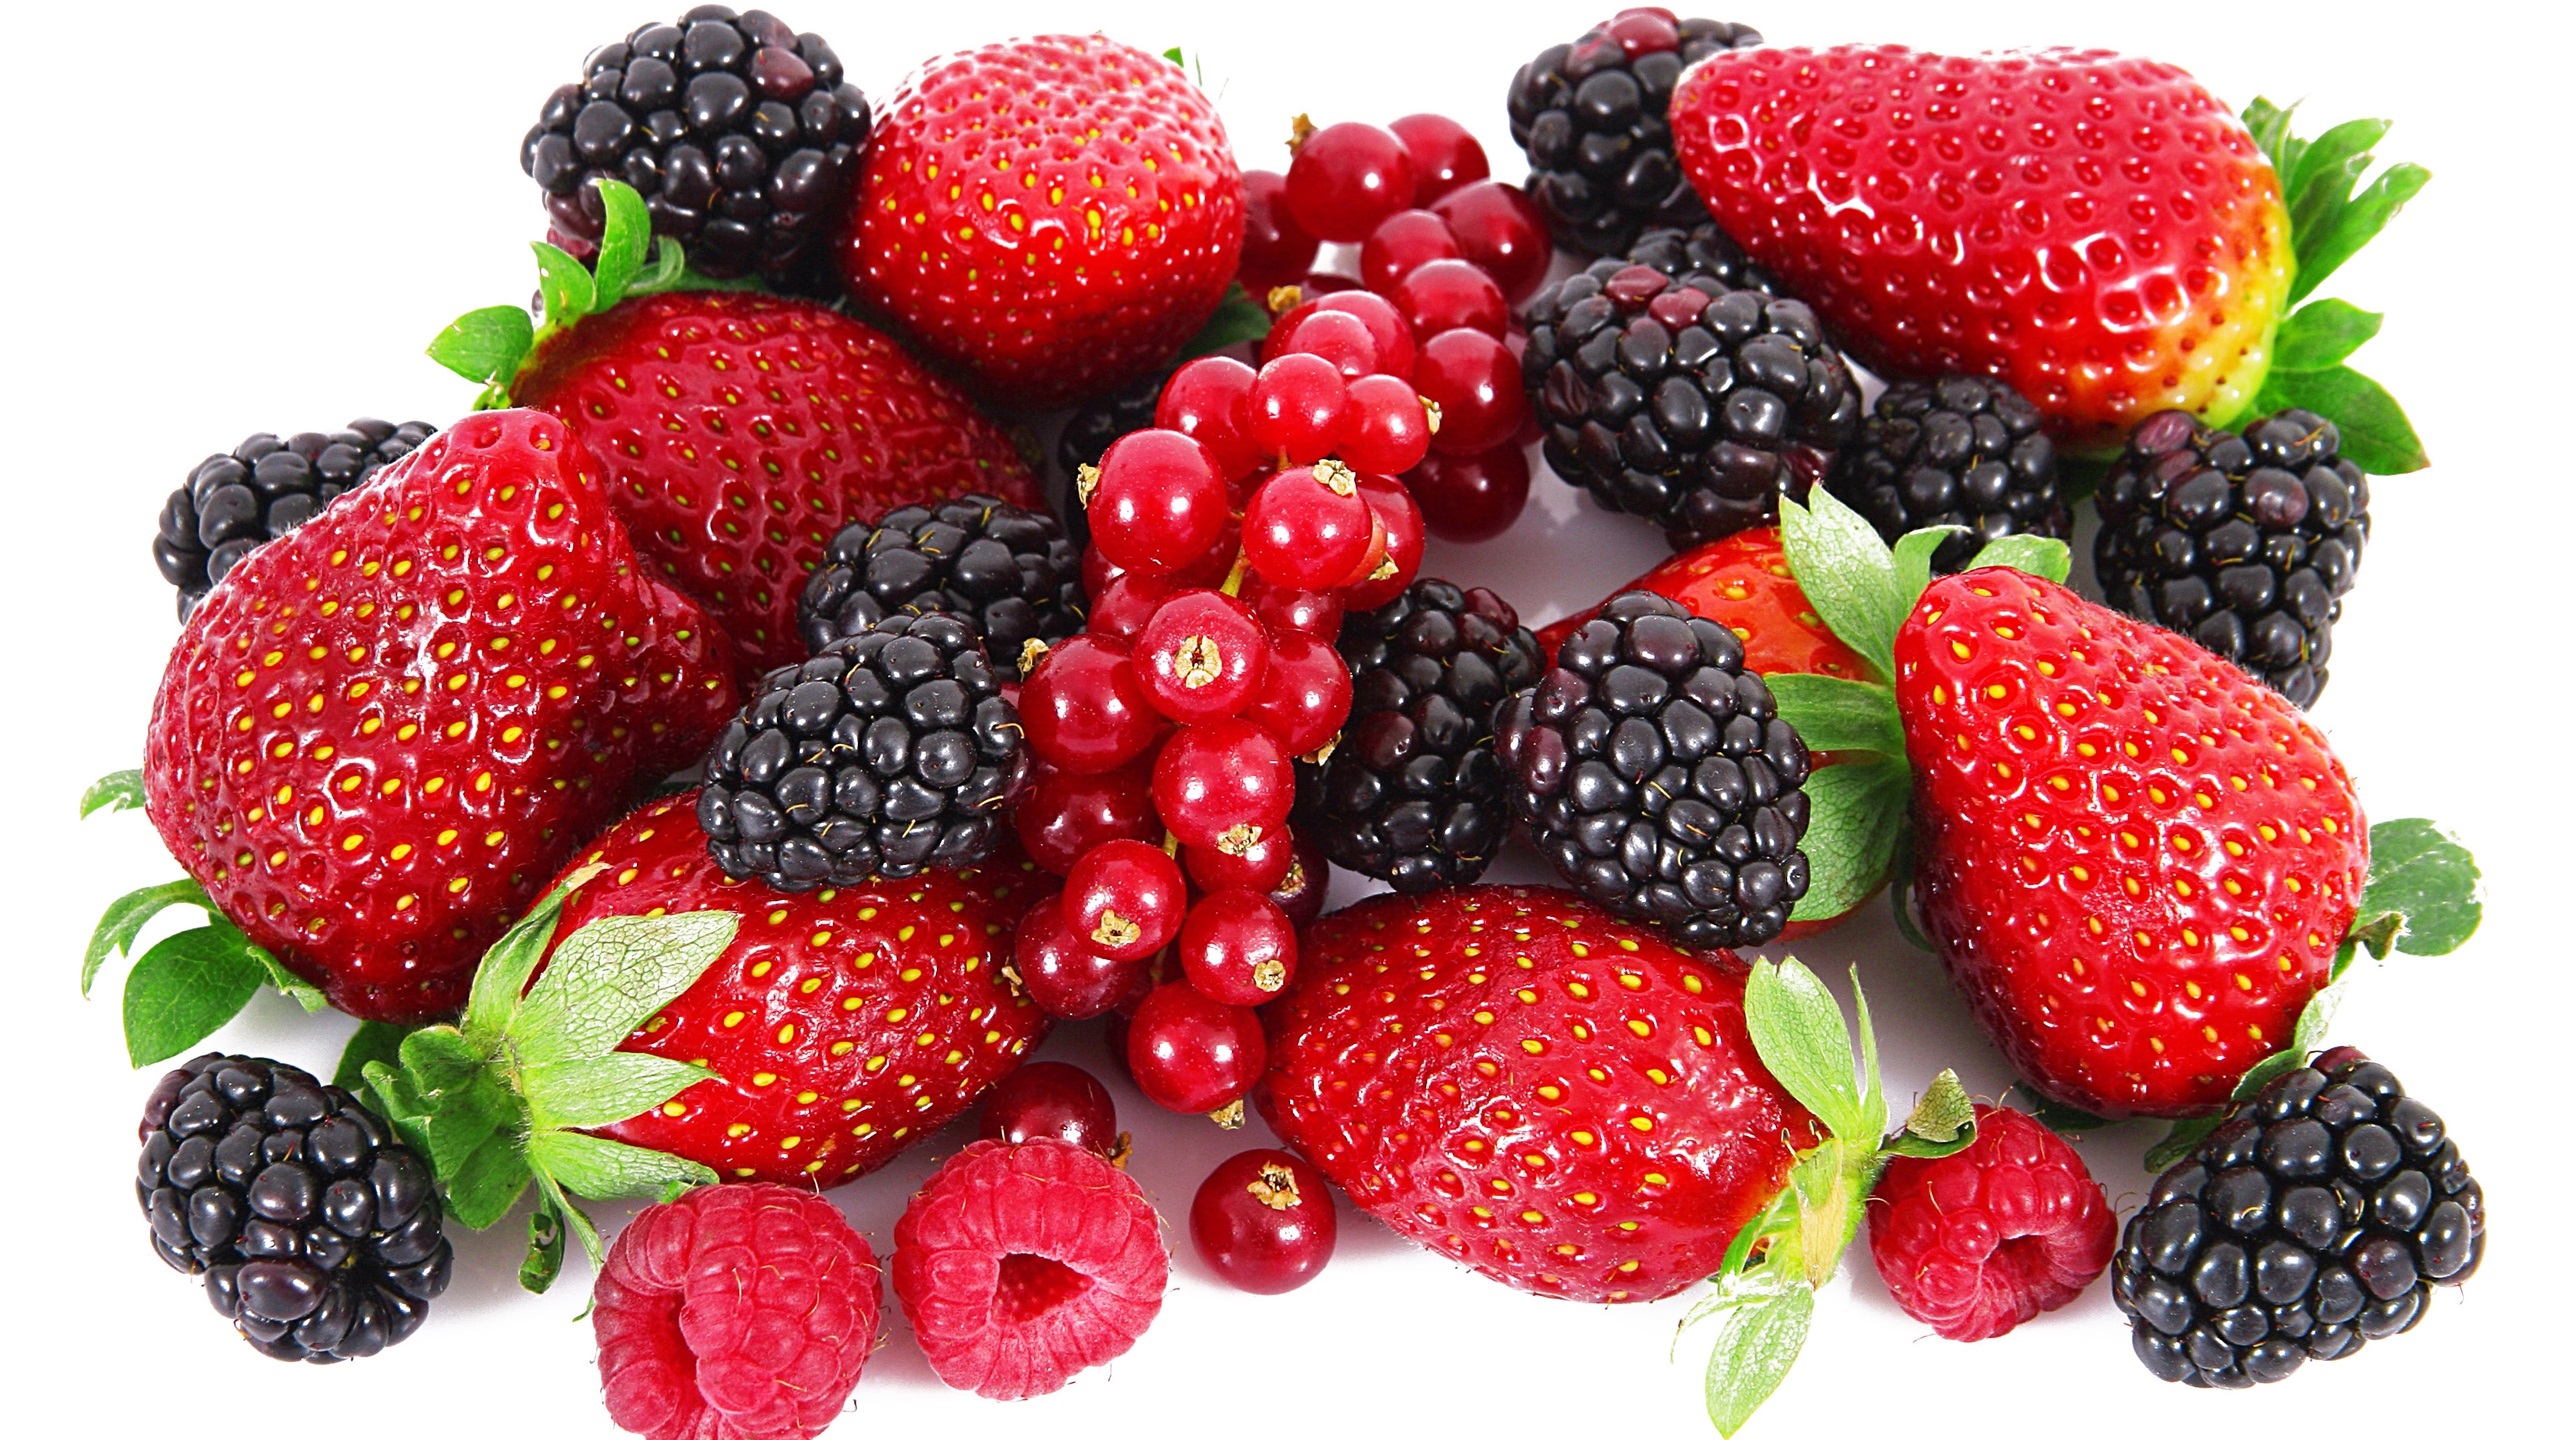 General 2560x1440 cranberries raspberries strawberries blackberries fruit simple background closeup